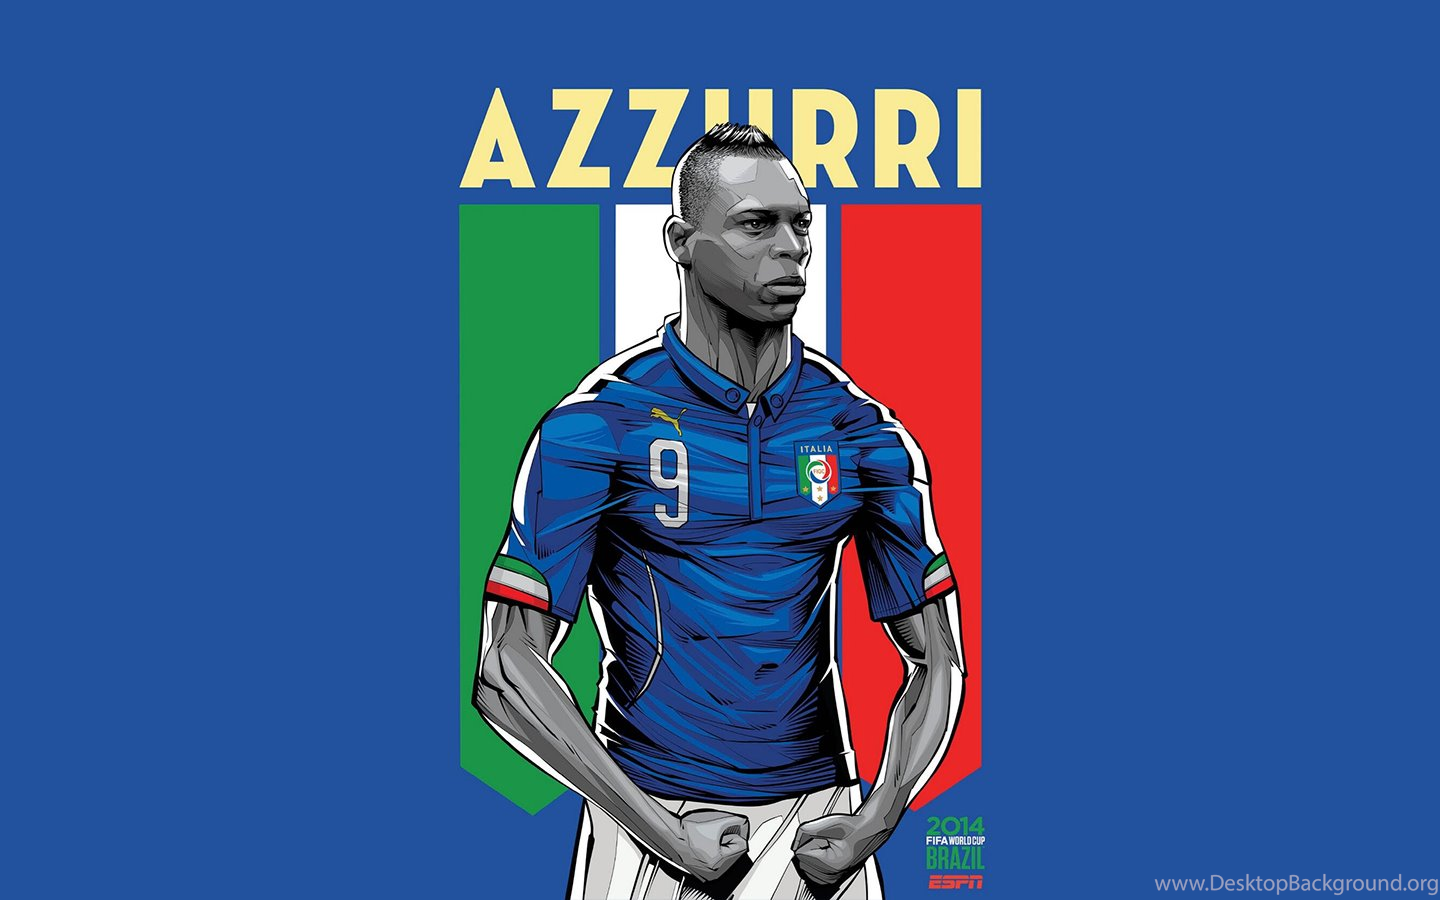 Gallery For Italian Soccer Wallpaper Desktop Background